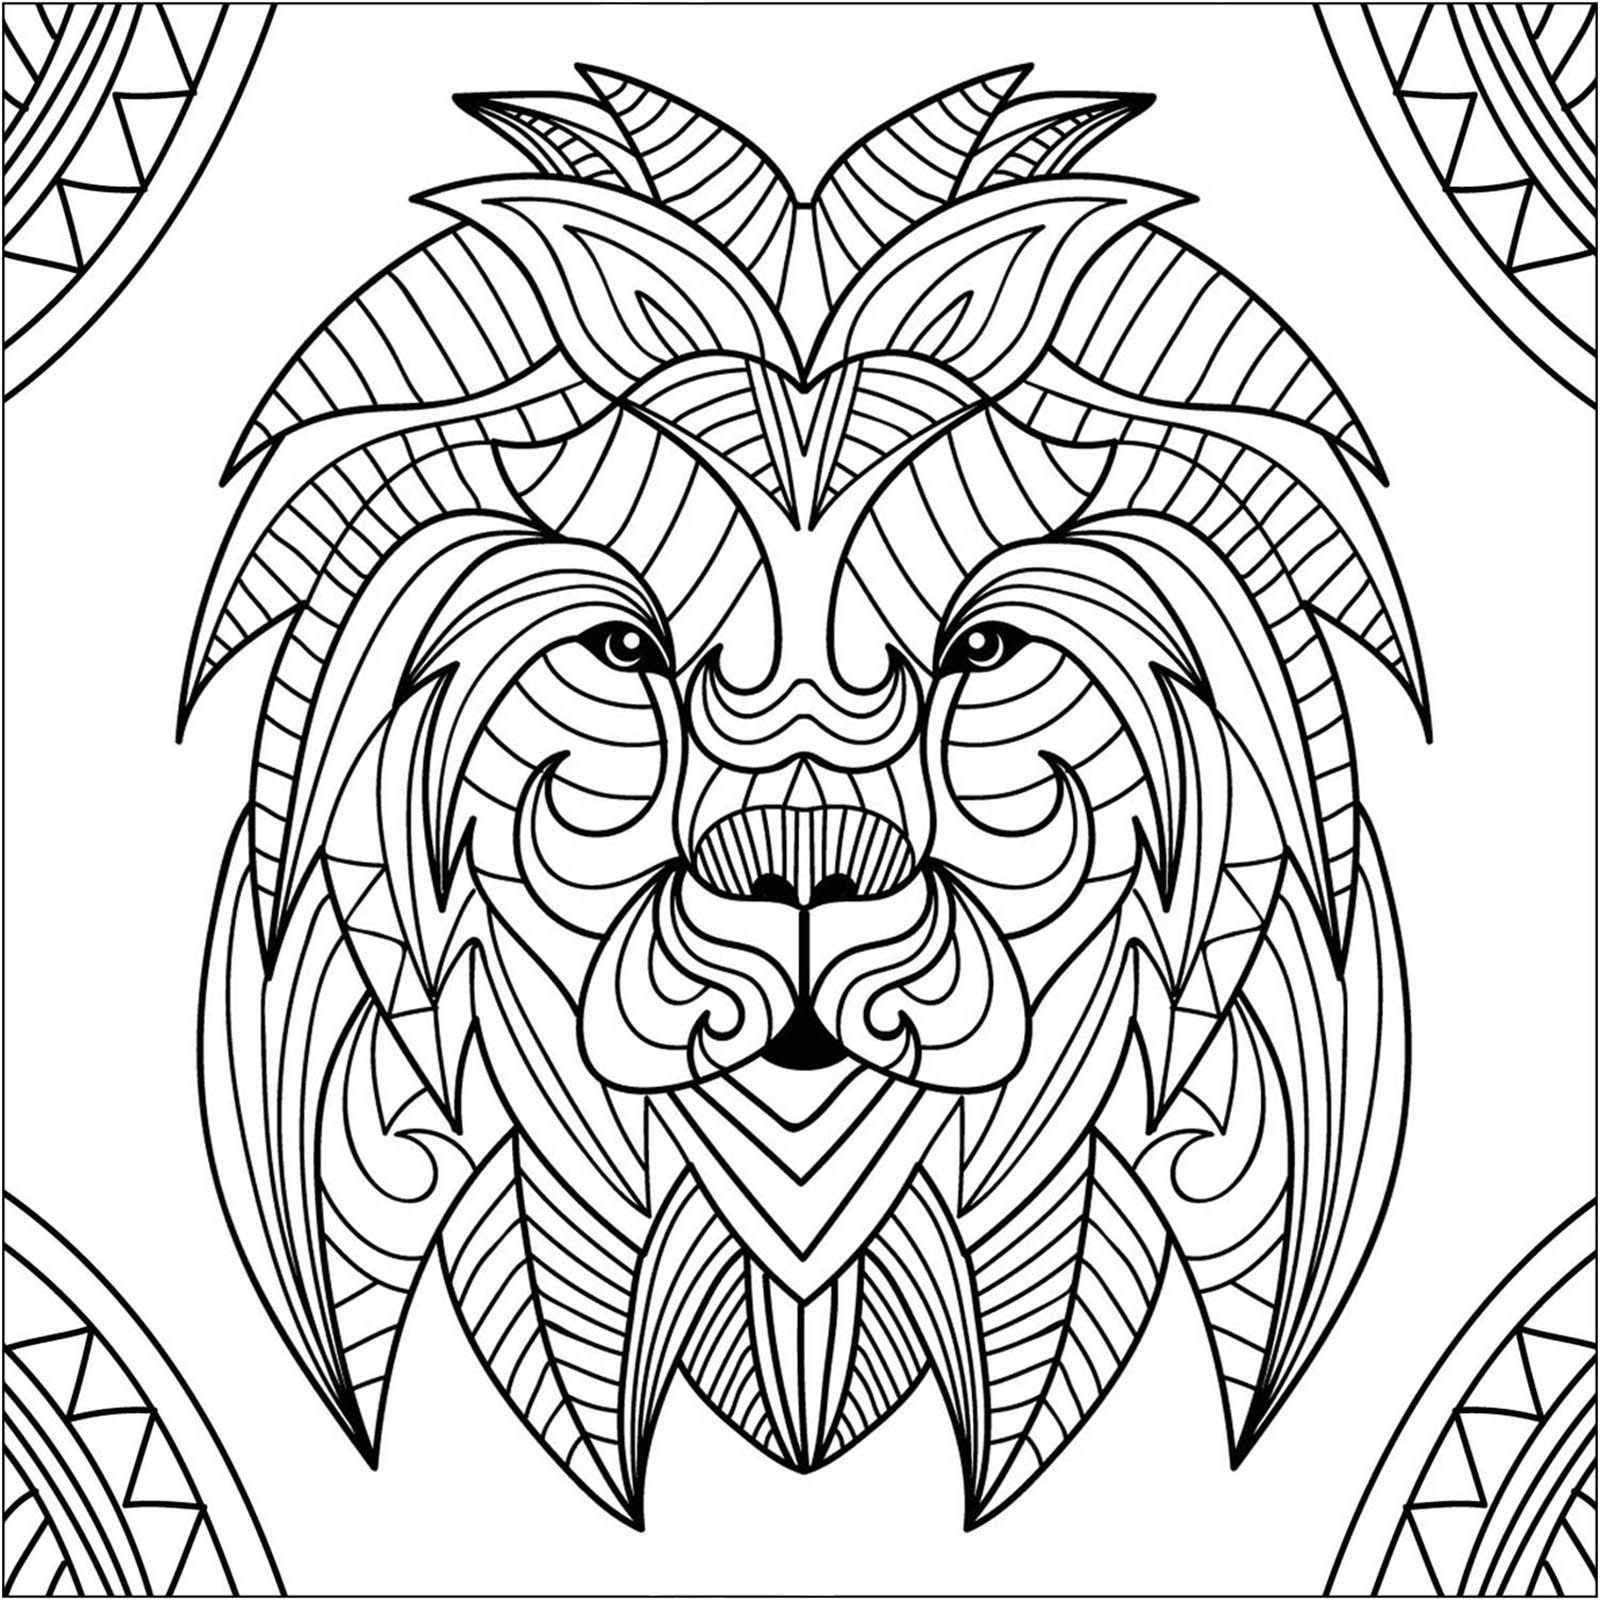 Disegni da Colorare per Adulti : Lions - 2